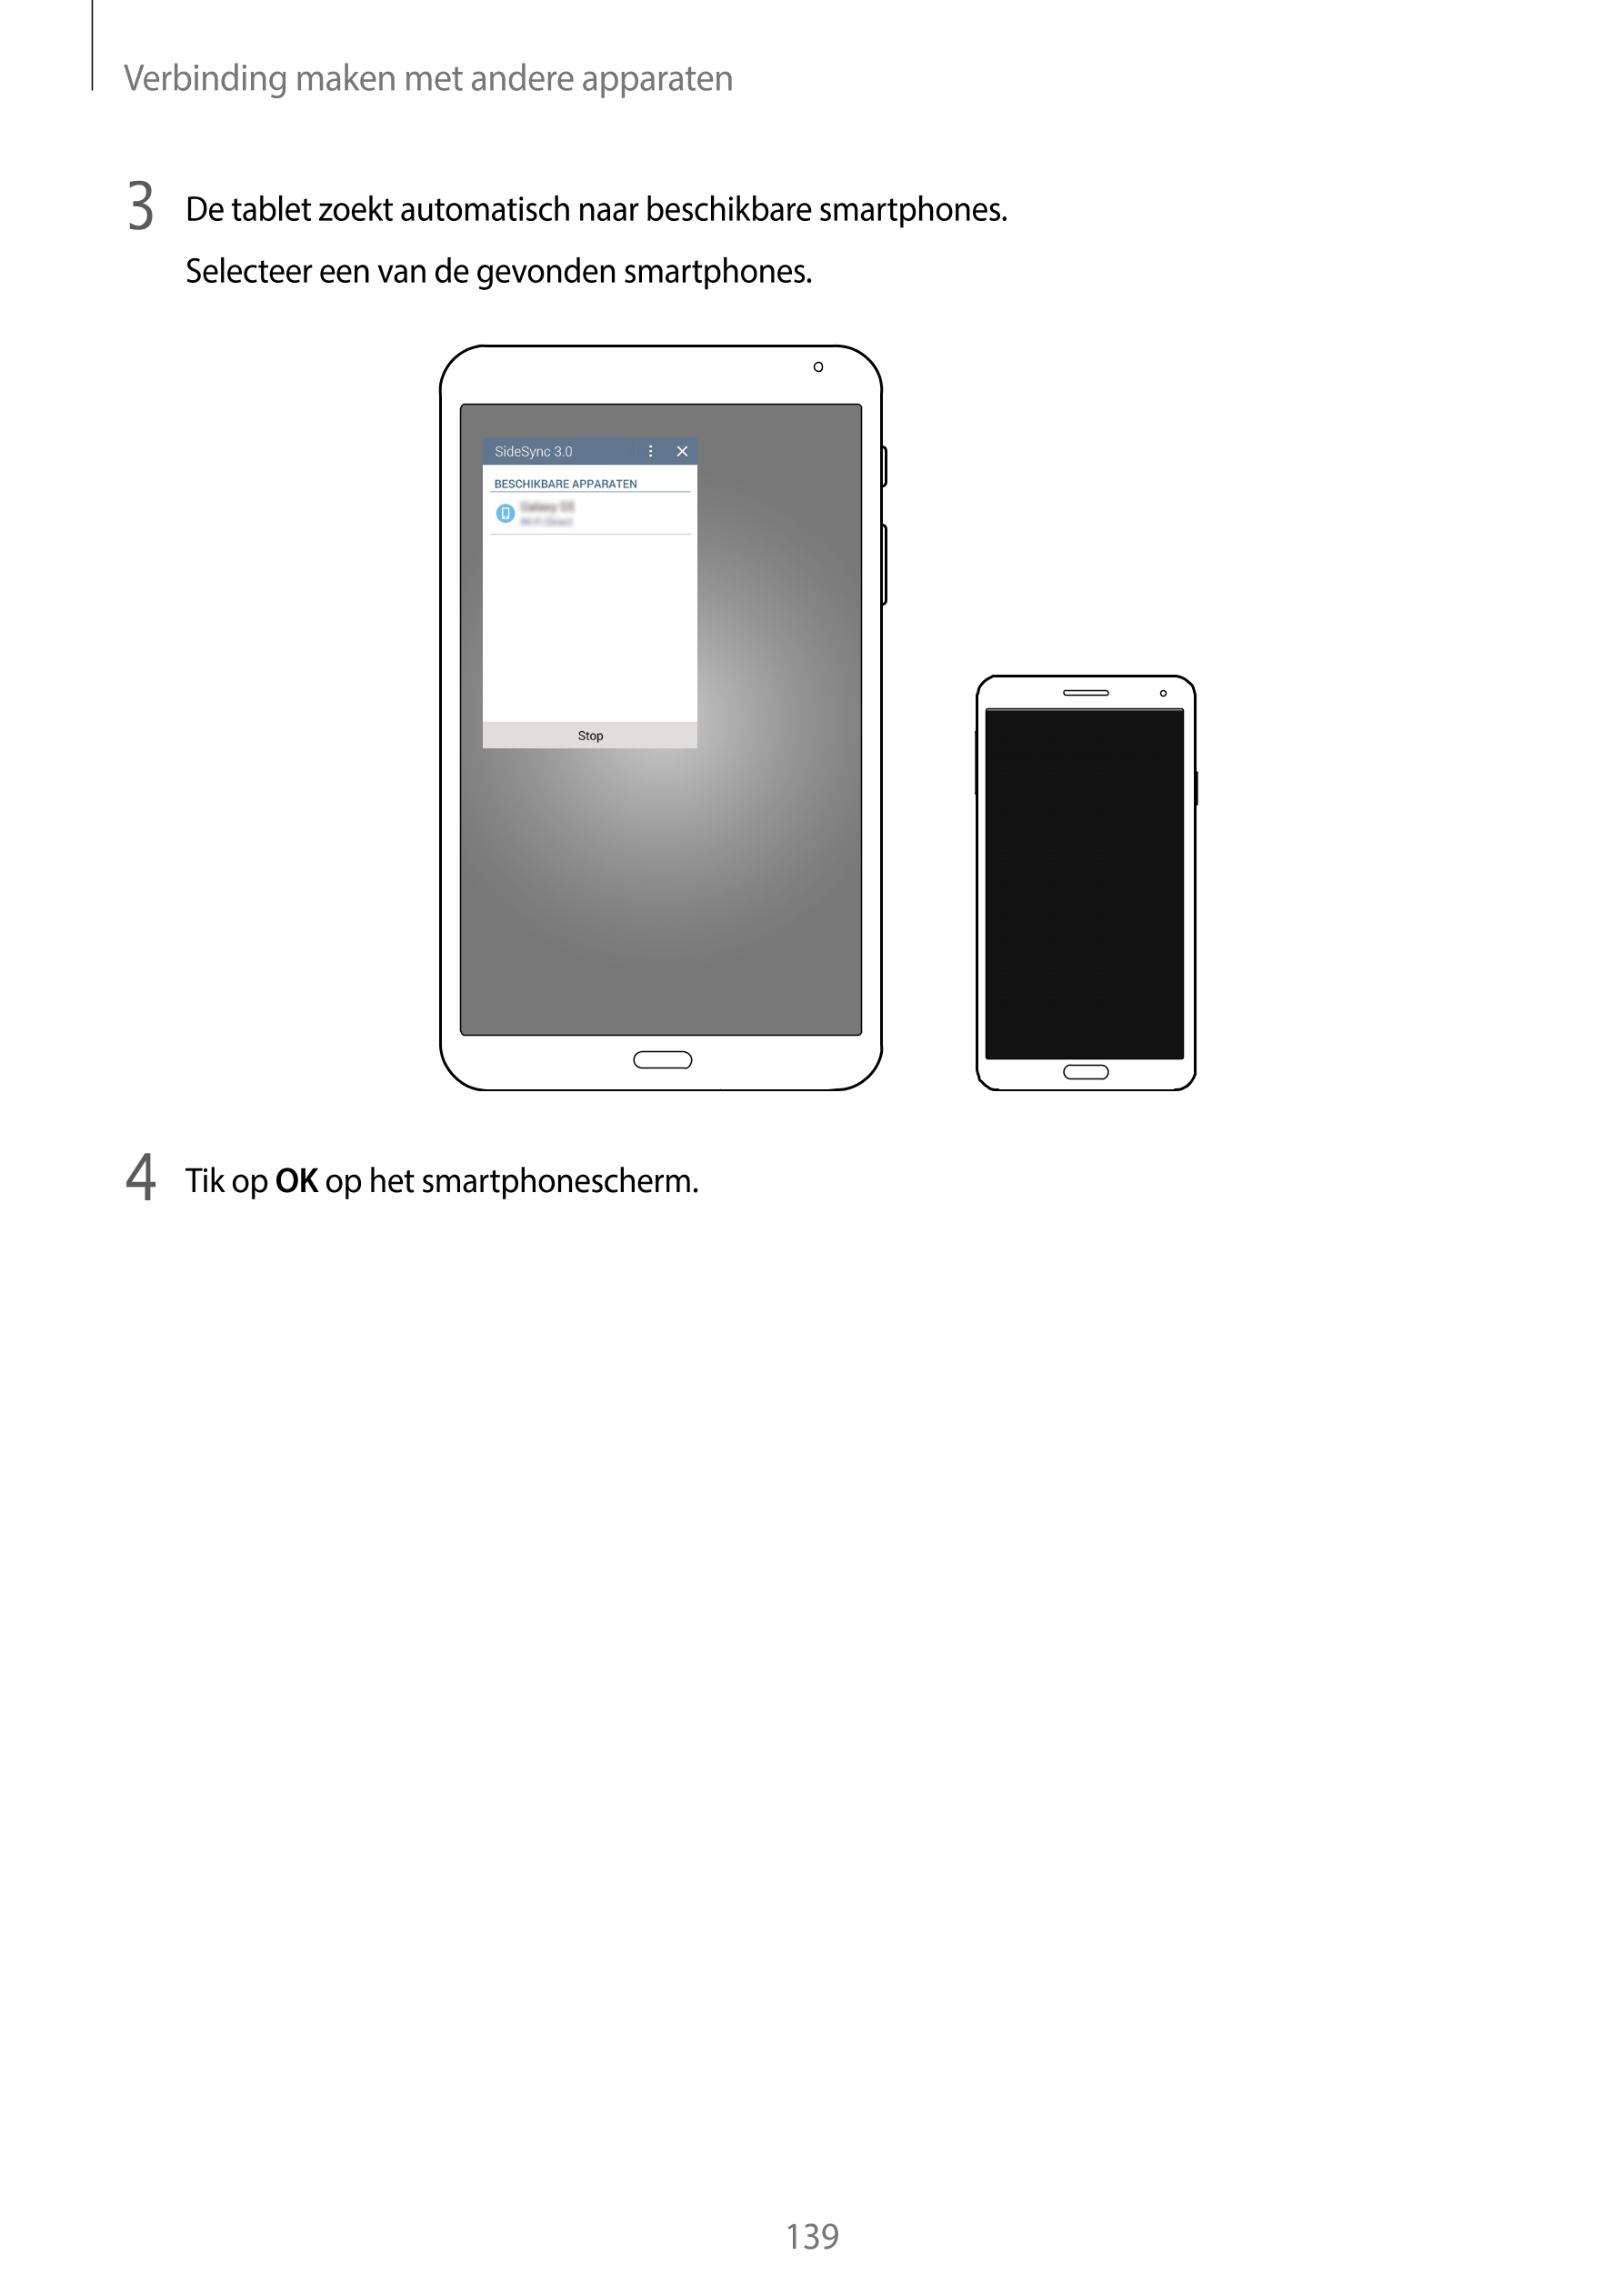 Verbinding maken met andere apparaten
3  De tablet zoekt automatisch naar beschikbare smartphones.
Selecteer een van de gevonden